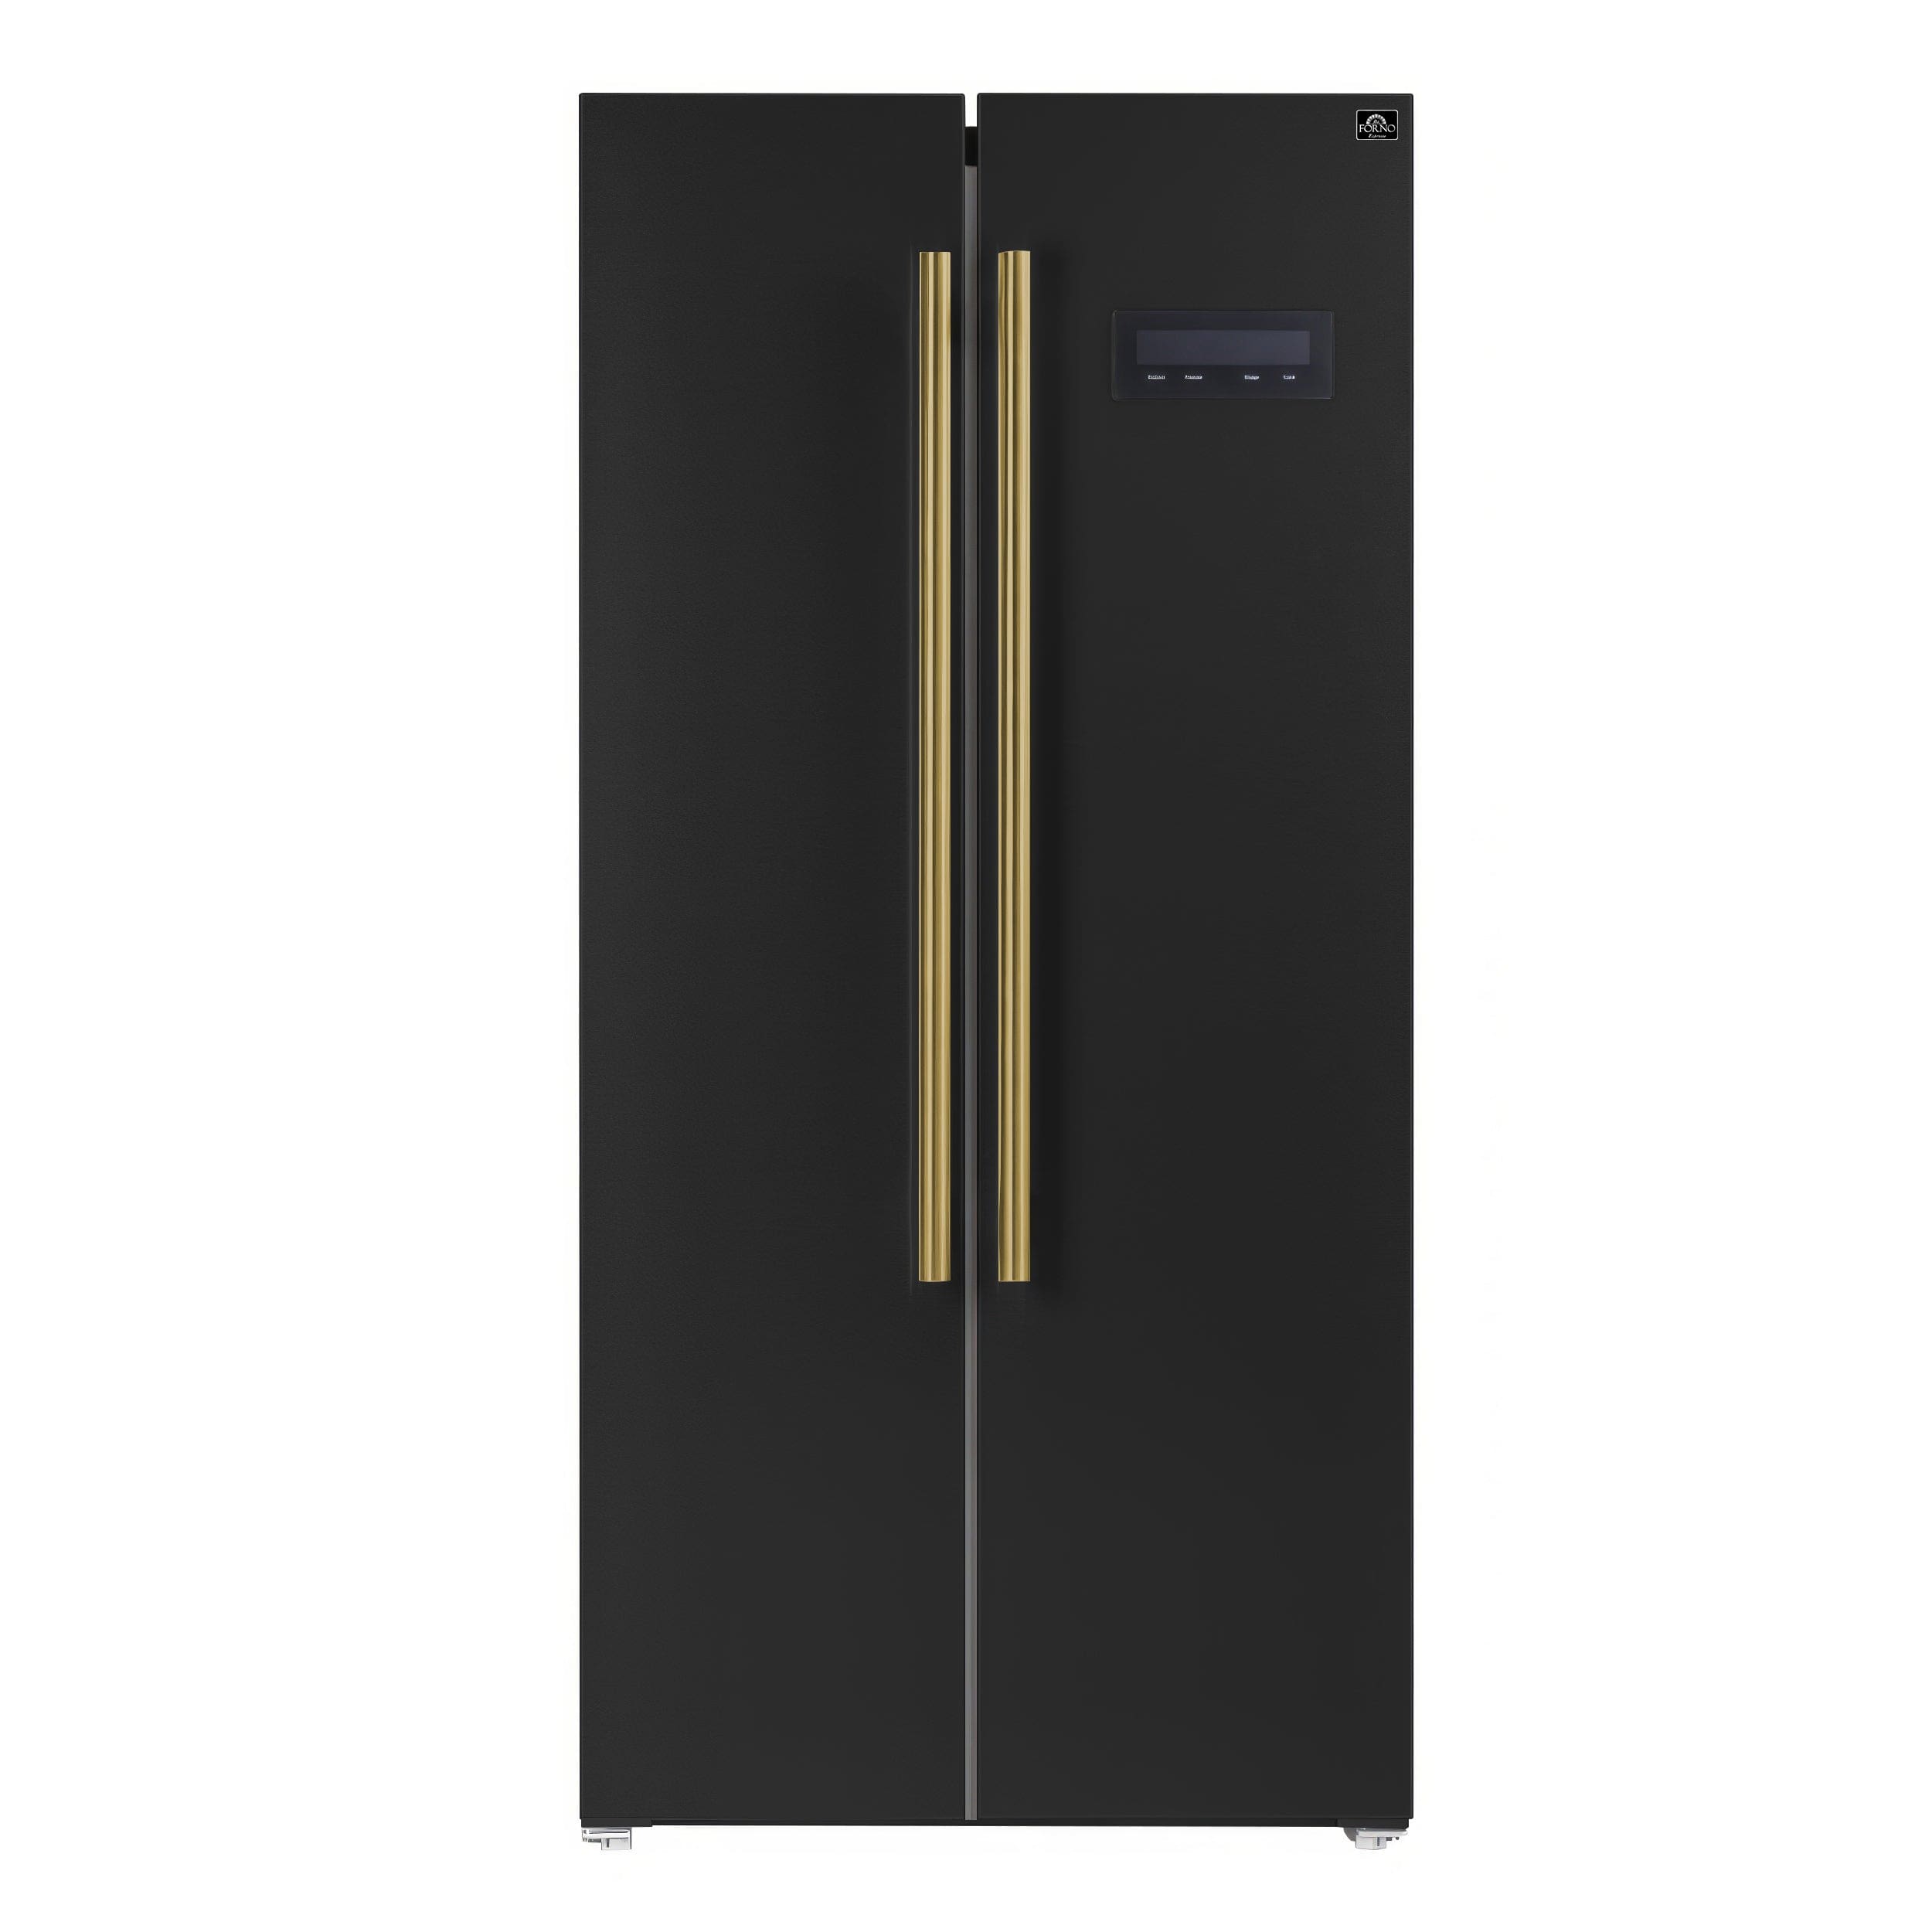 Forno Espresso 33" 15.6 cu. ft. Refrigerator in Black with Antique Brass Handles, FFRBI1805-33BLK Refrigerator FFRBI1805-33BLK Luxury Appliances Direct